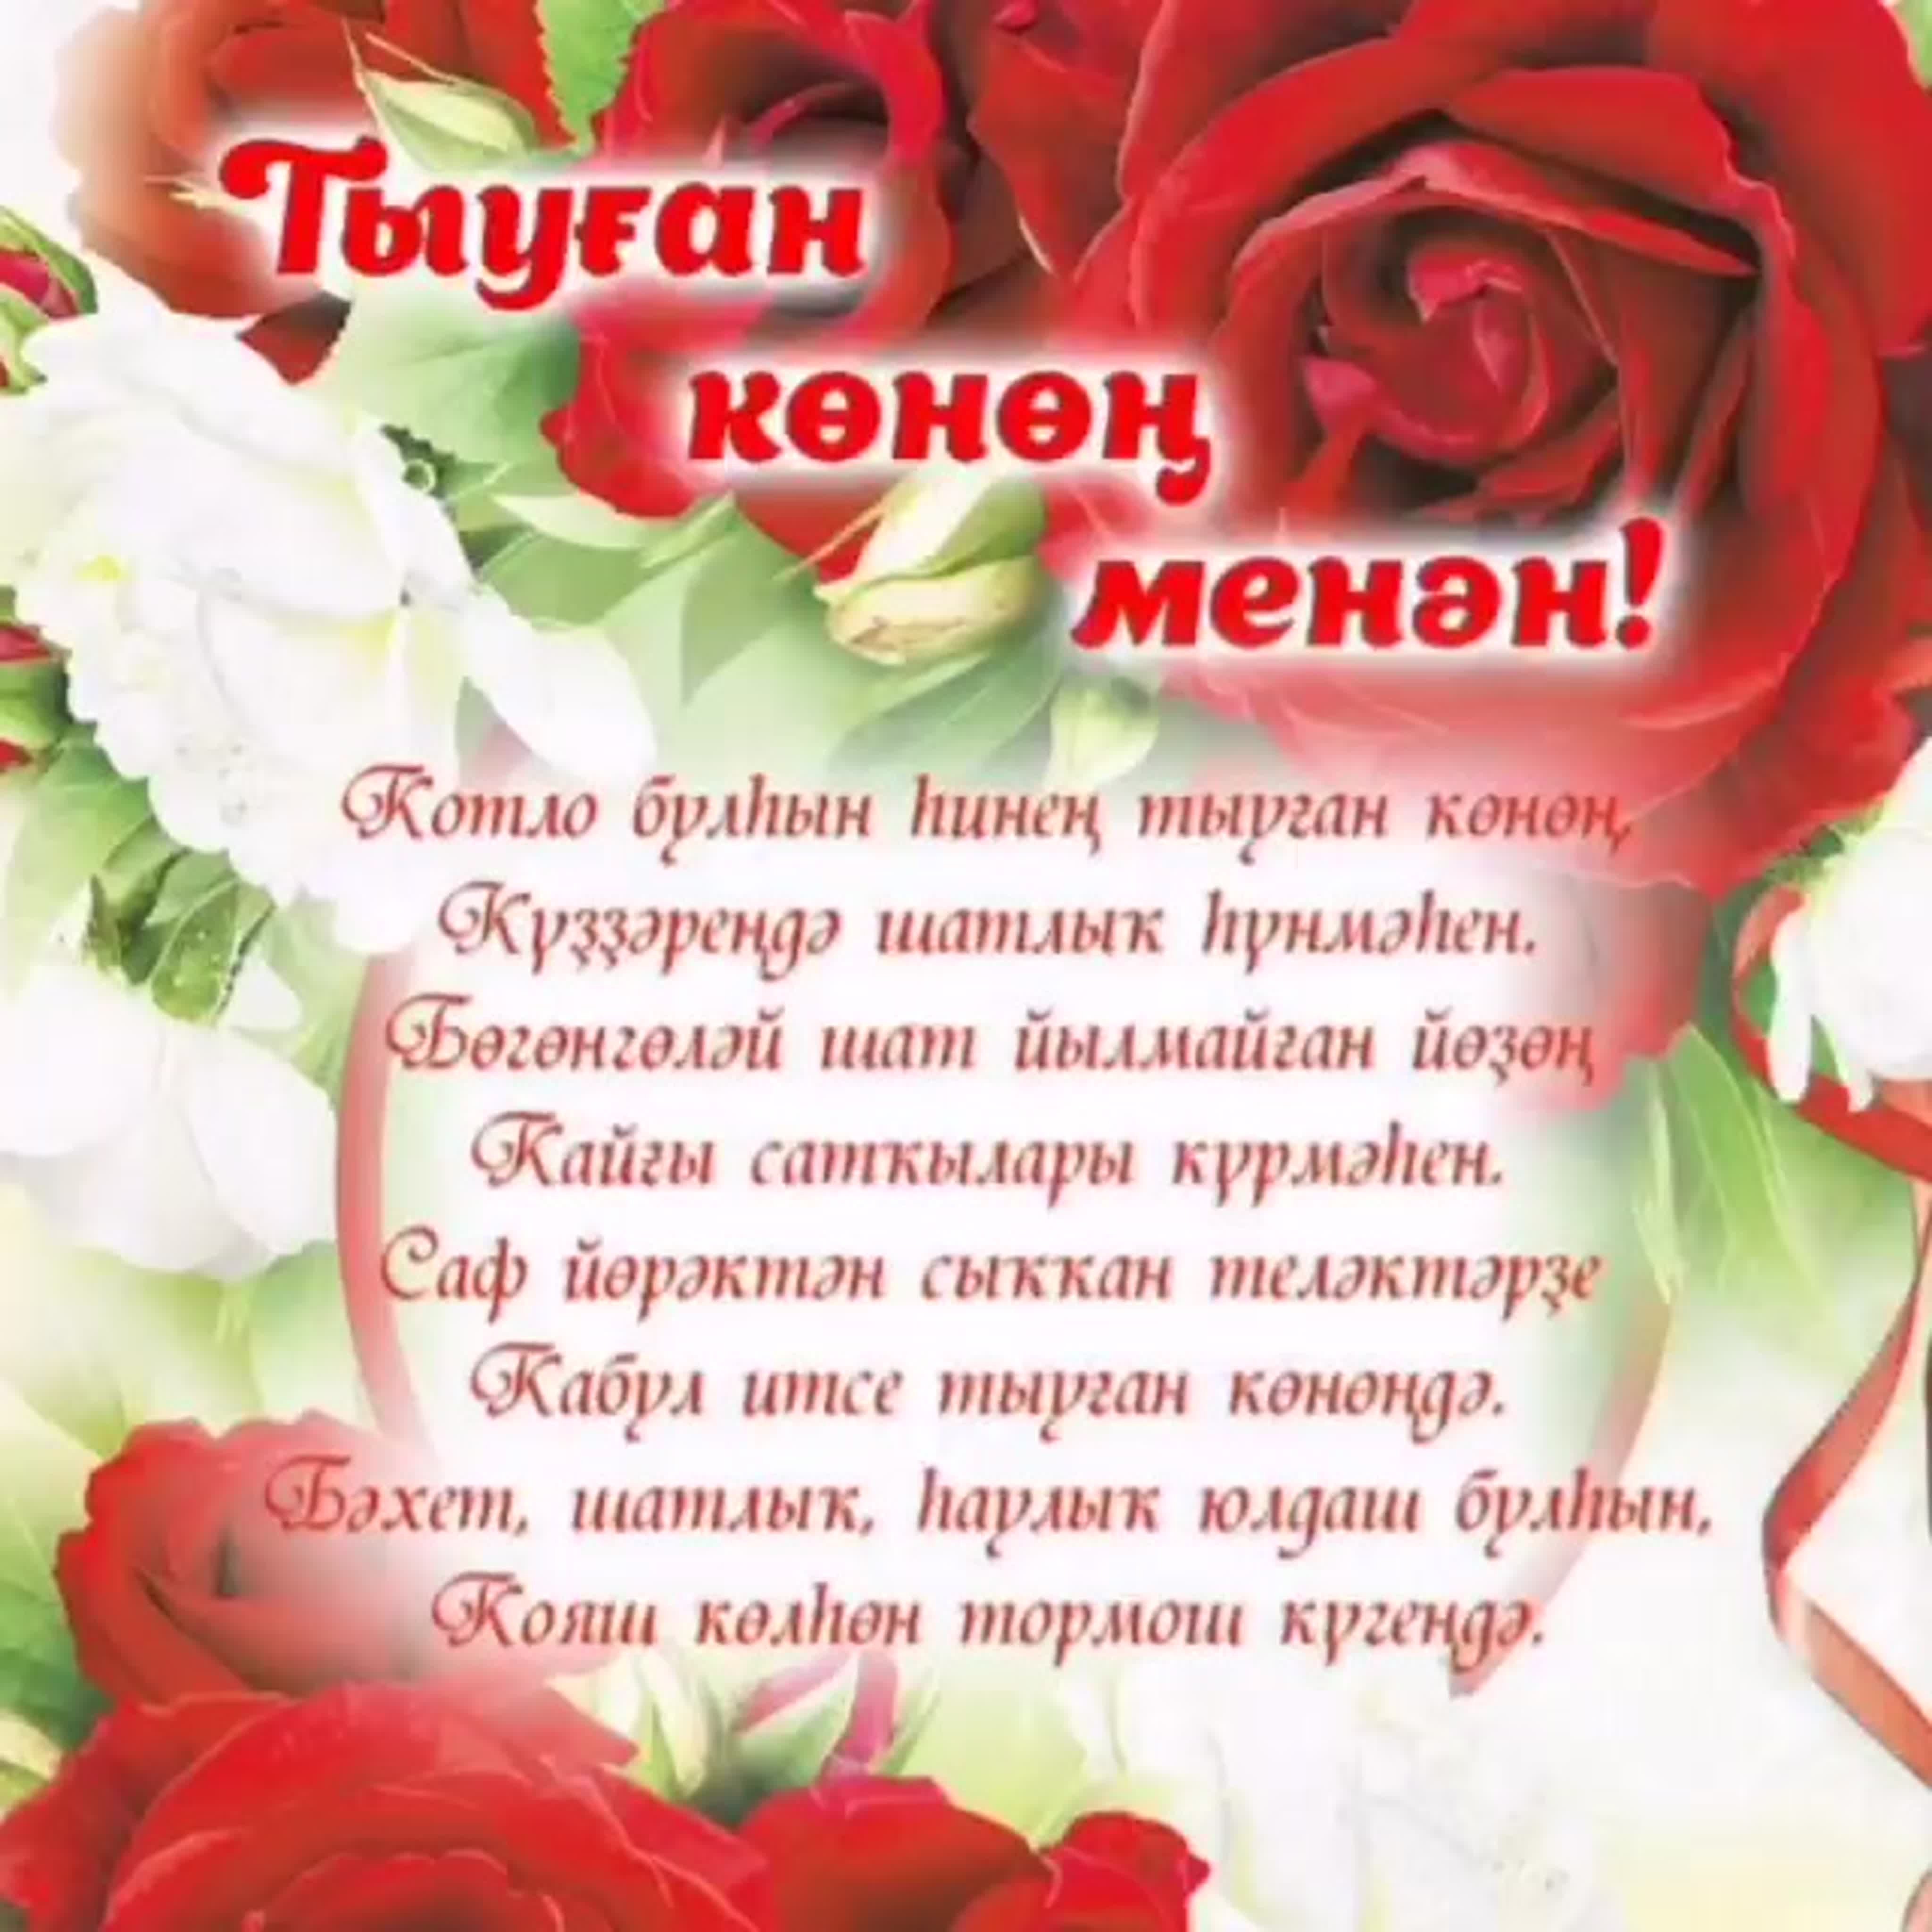 Поздравление на татарском языке подруге. Поздравления на башкирском языке. Поздравления с днём рождения на башкирском языке. Поздравление на татарском языке. Поздравления с днём рождения женщине на башкирском языке.